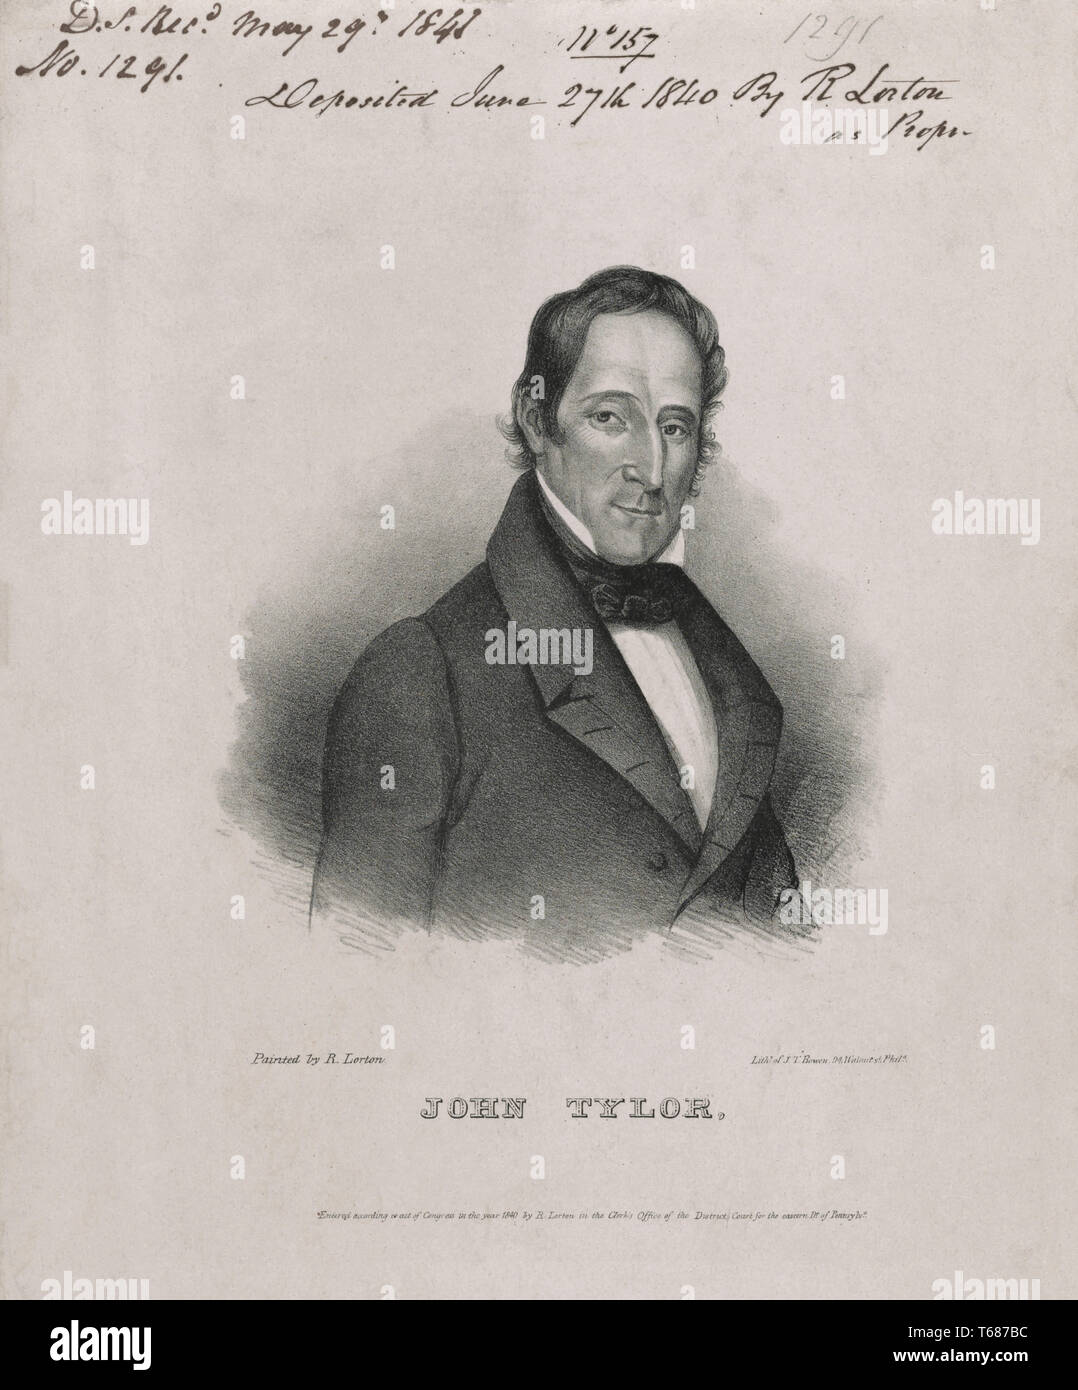 John Tyler (1790-1862), 10e président des États-Unis, la tête et épaules Portrait, lithographie de John T. Bowen à un tableau de R. Lorton, 1840 Banque D'Images